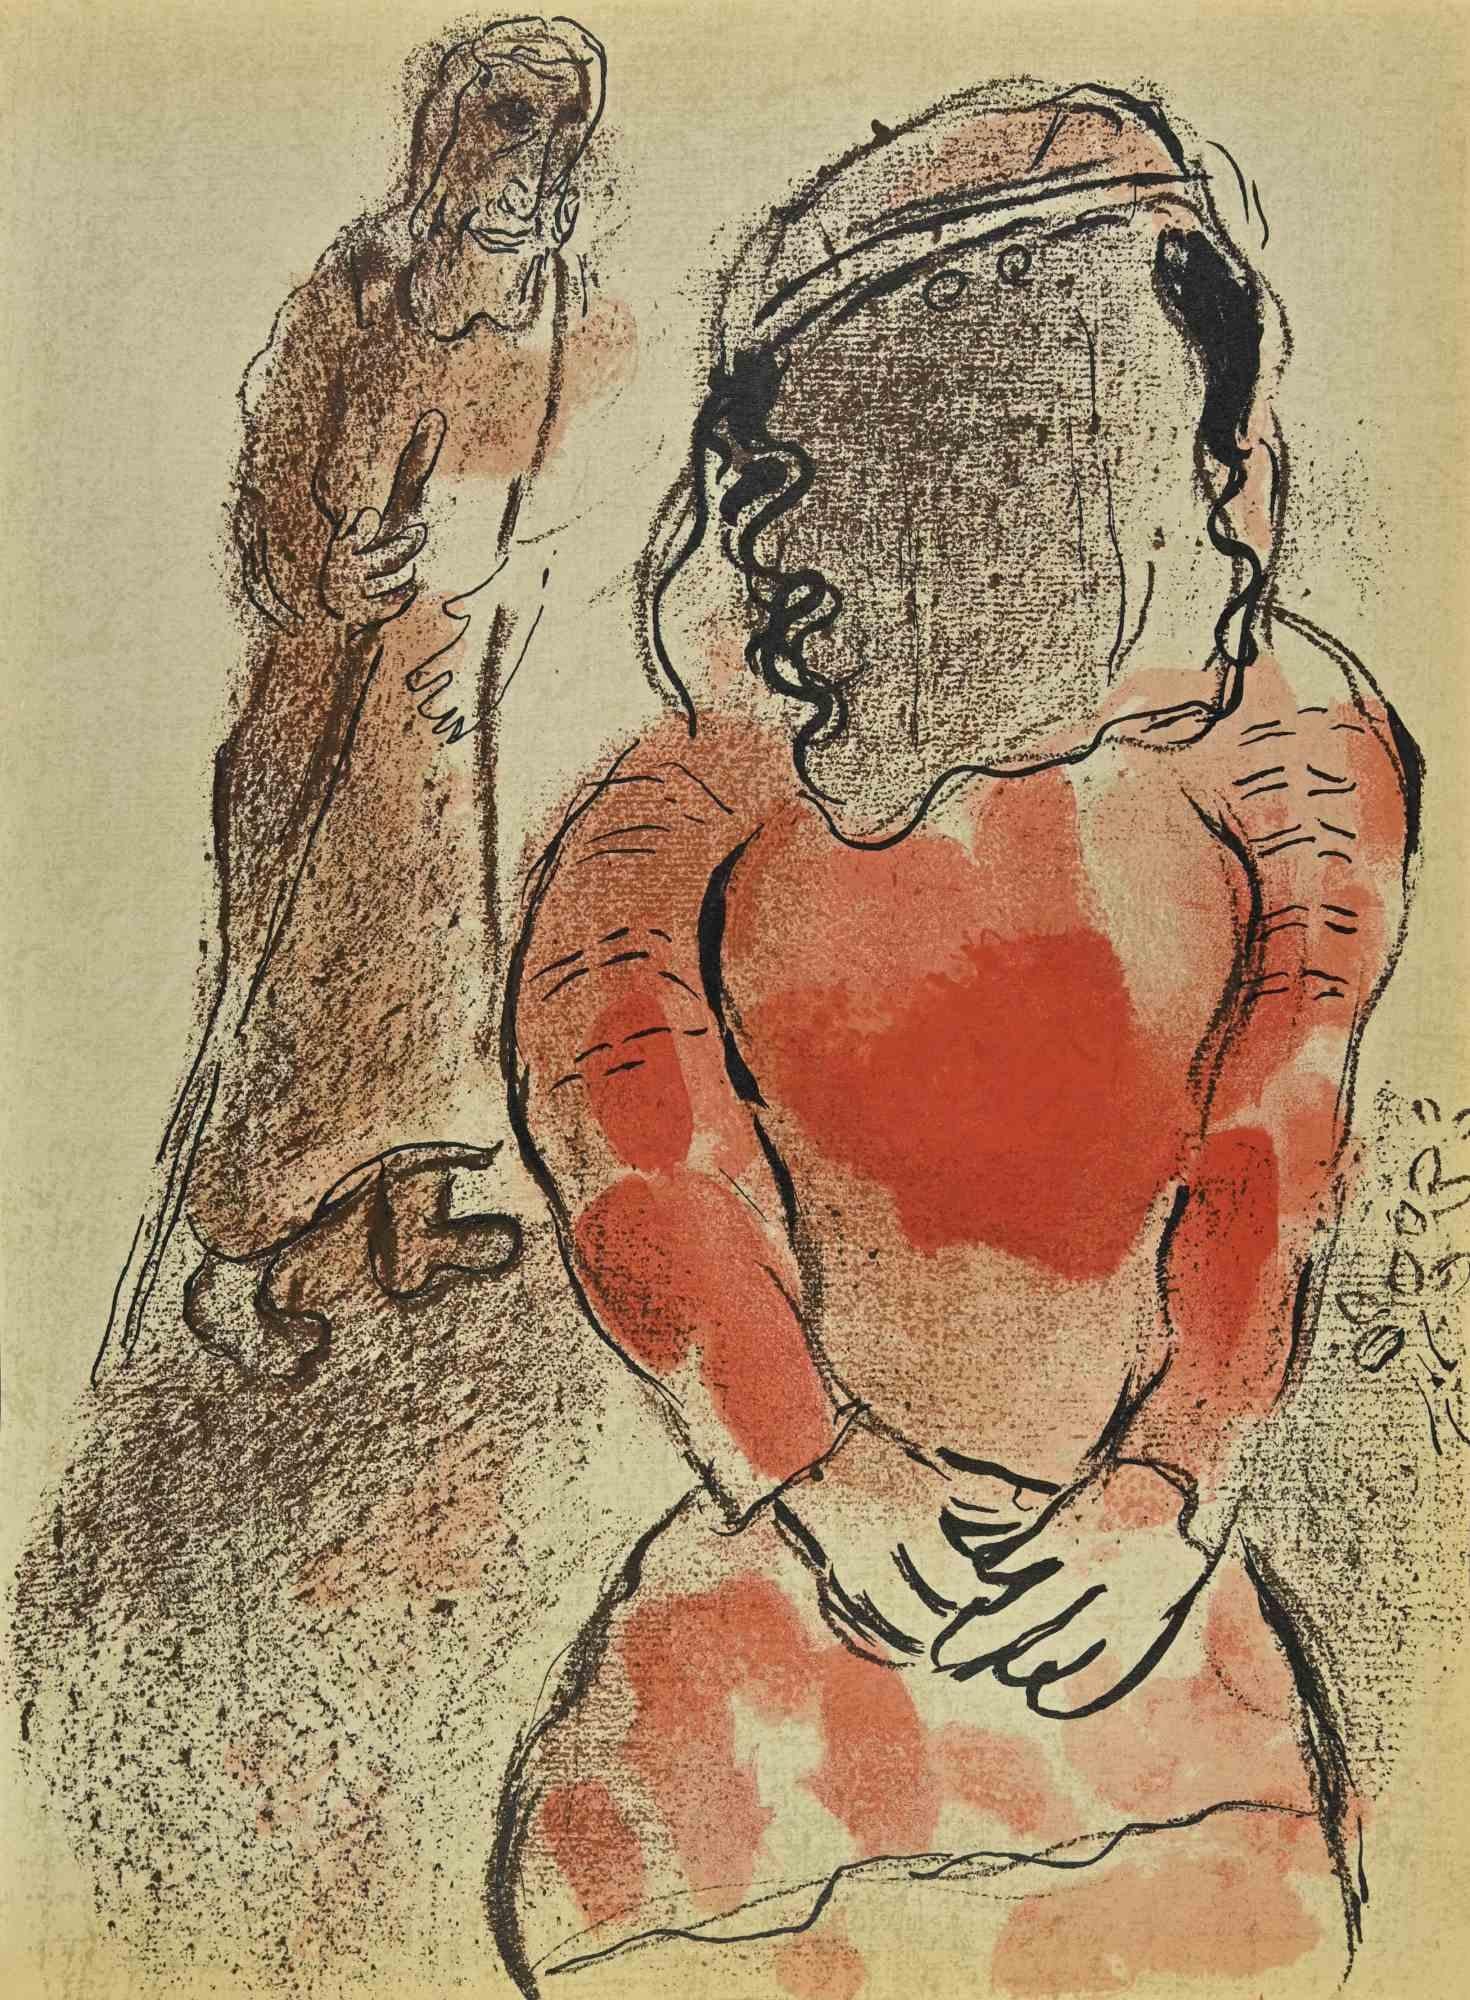 Tamar, die schöne Tochter Judas ist ein Kunstwerk aus der Serie "Die Bibel",  realisiert von Marc Chagall im Jahr 1960.

Farblithografie auf braunem Papier, ohne Signatur.

Auflage von 6500 unsignierten Lithografien. Gedruckt von Mourlot und